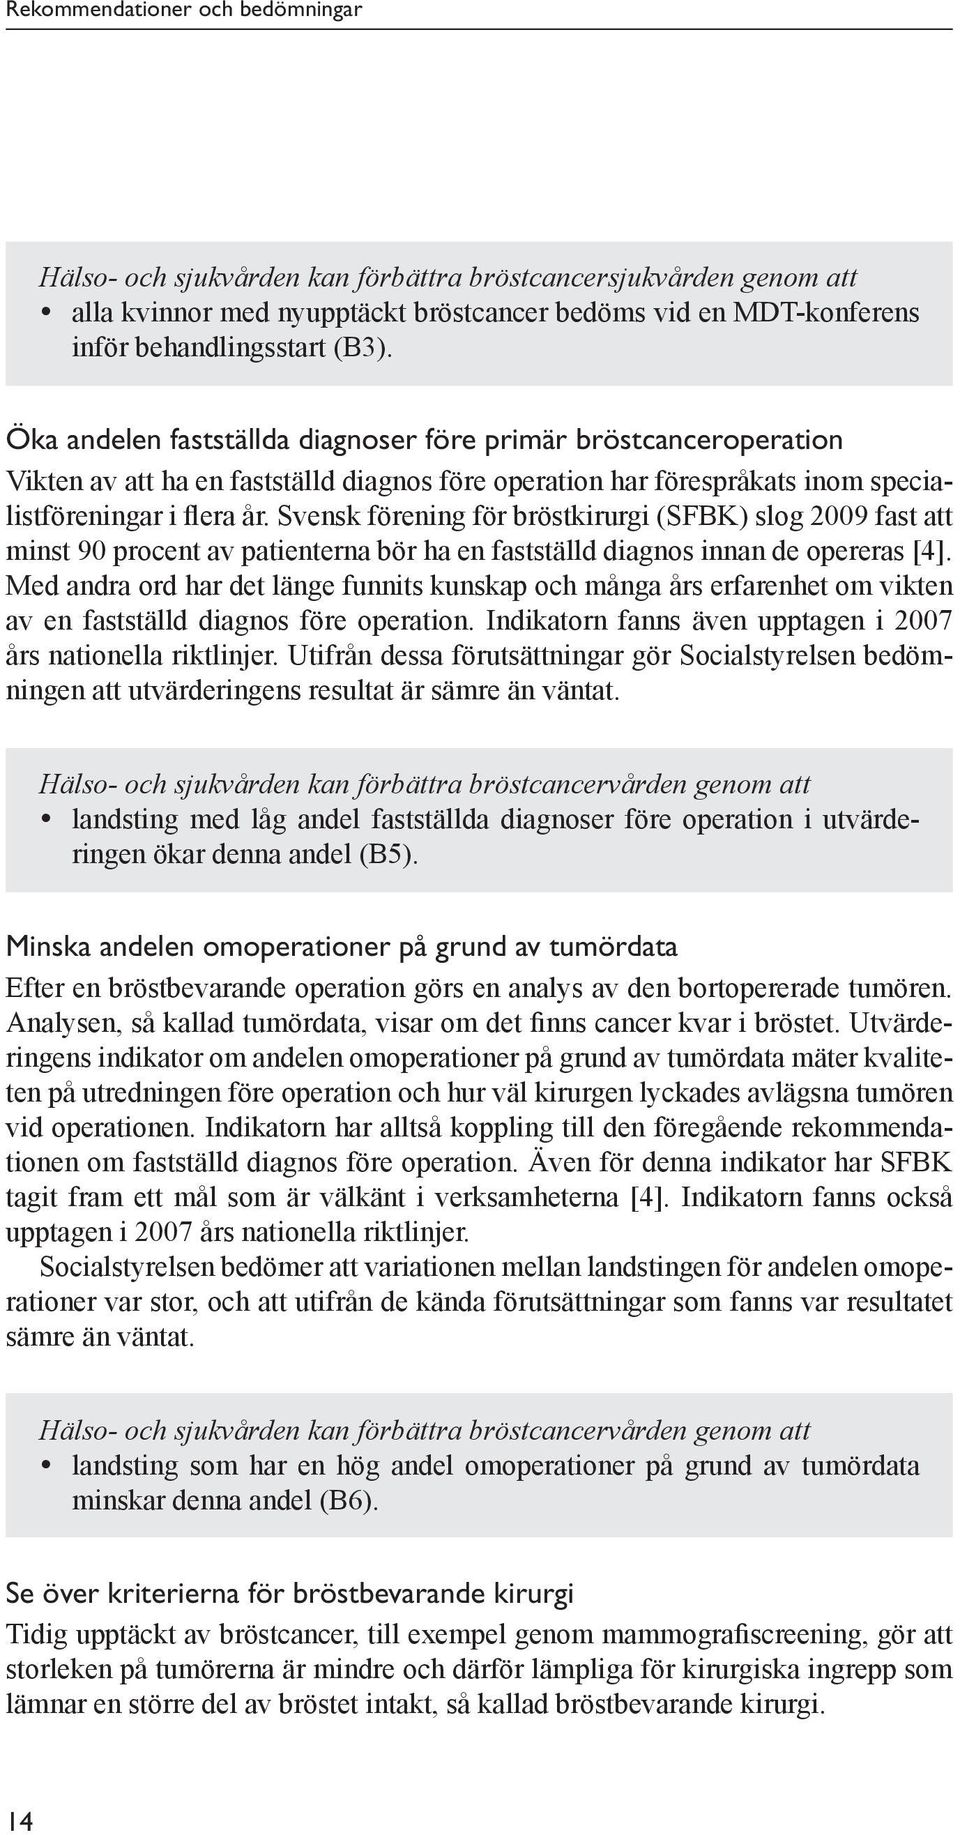 Svensk förening för bröstkirurgi (SFBK) slog 2009 fast att minst 90 procent av patienterna bör ha en fastställd diagnos innan de opereras [4].